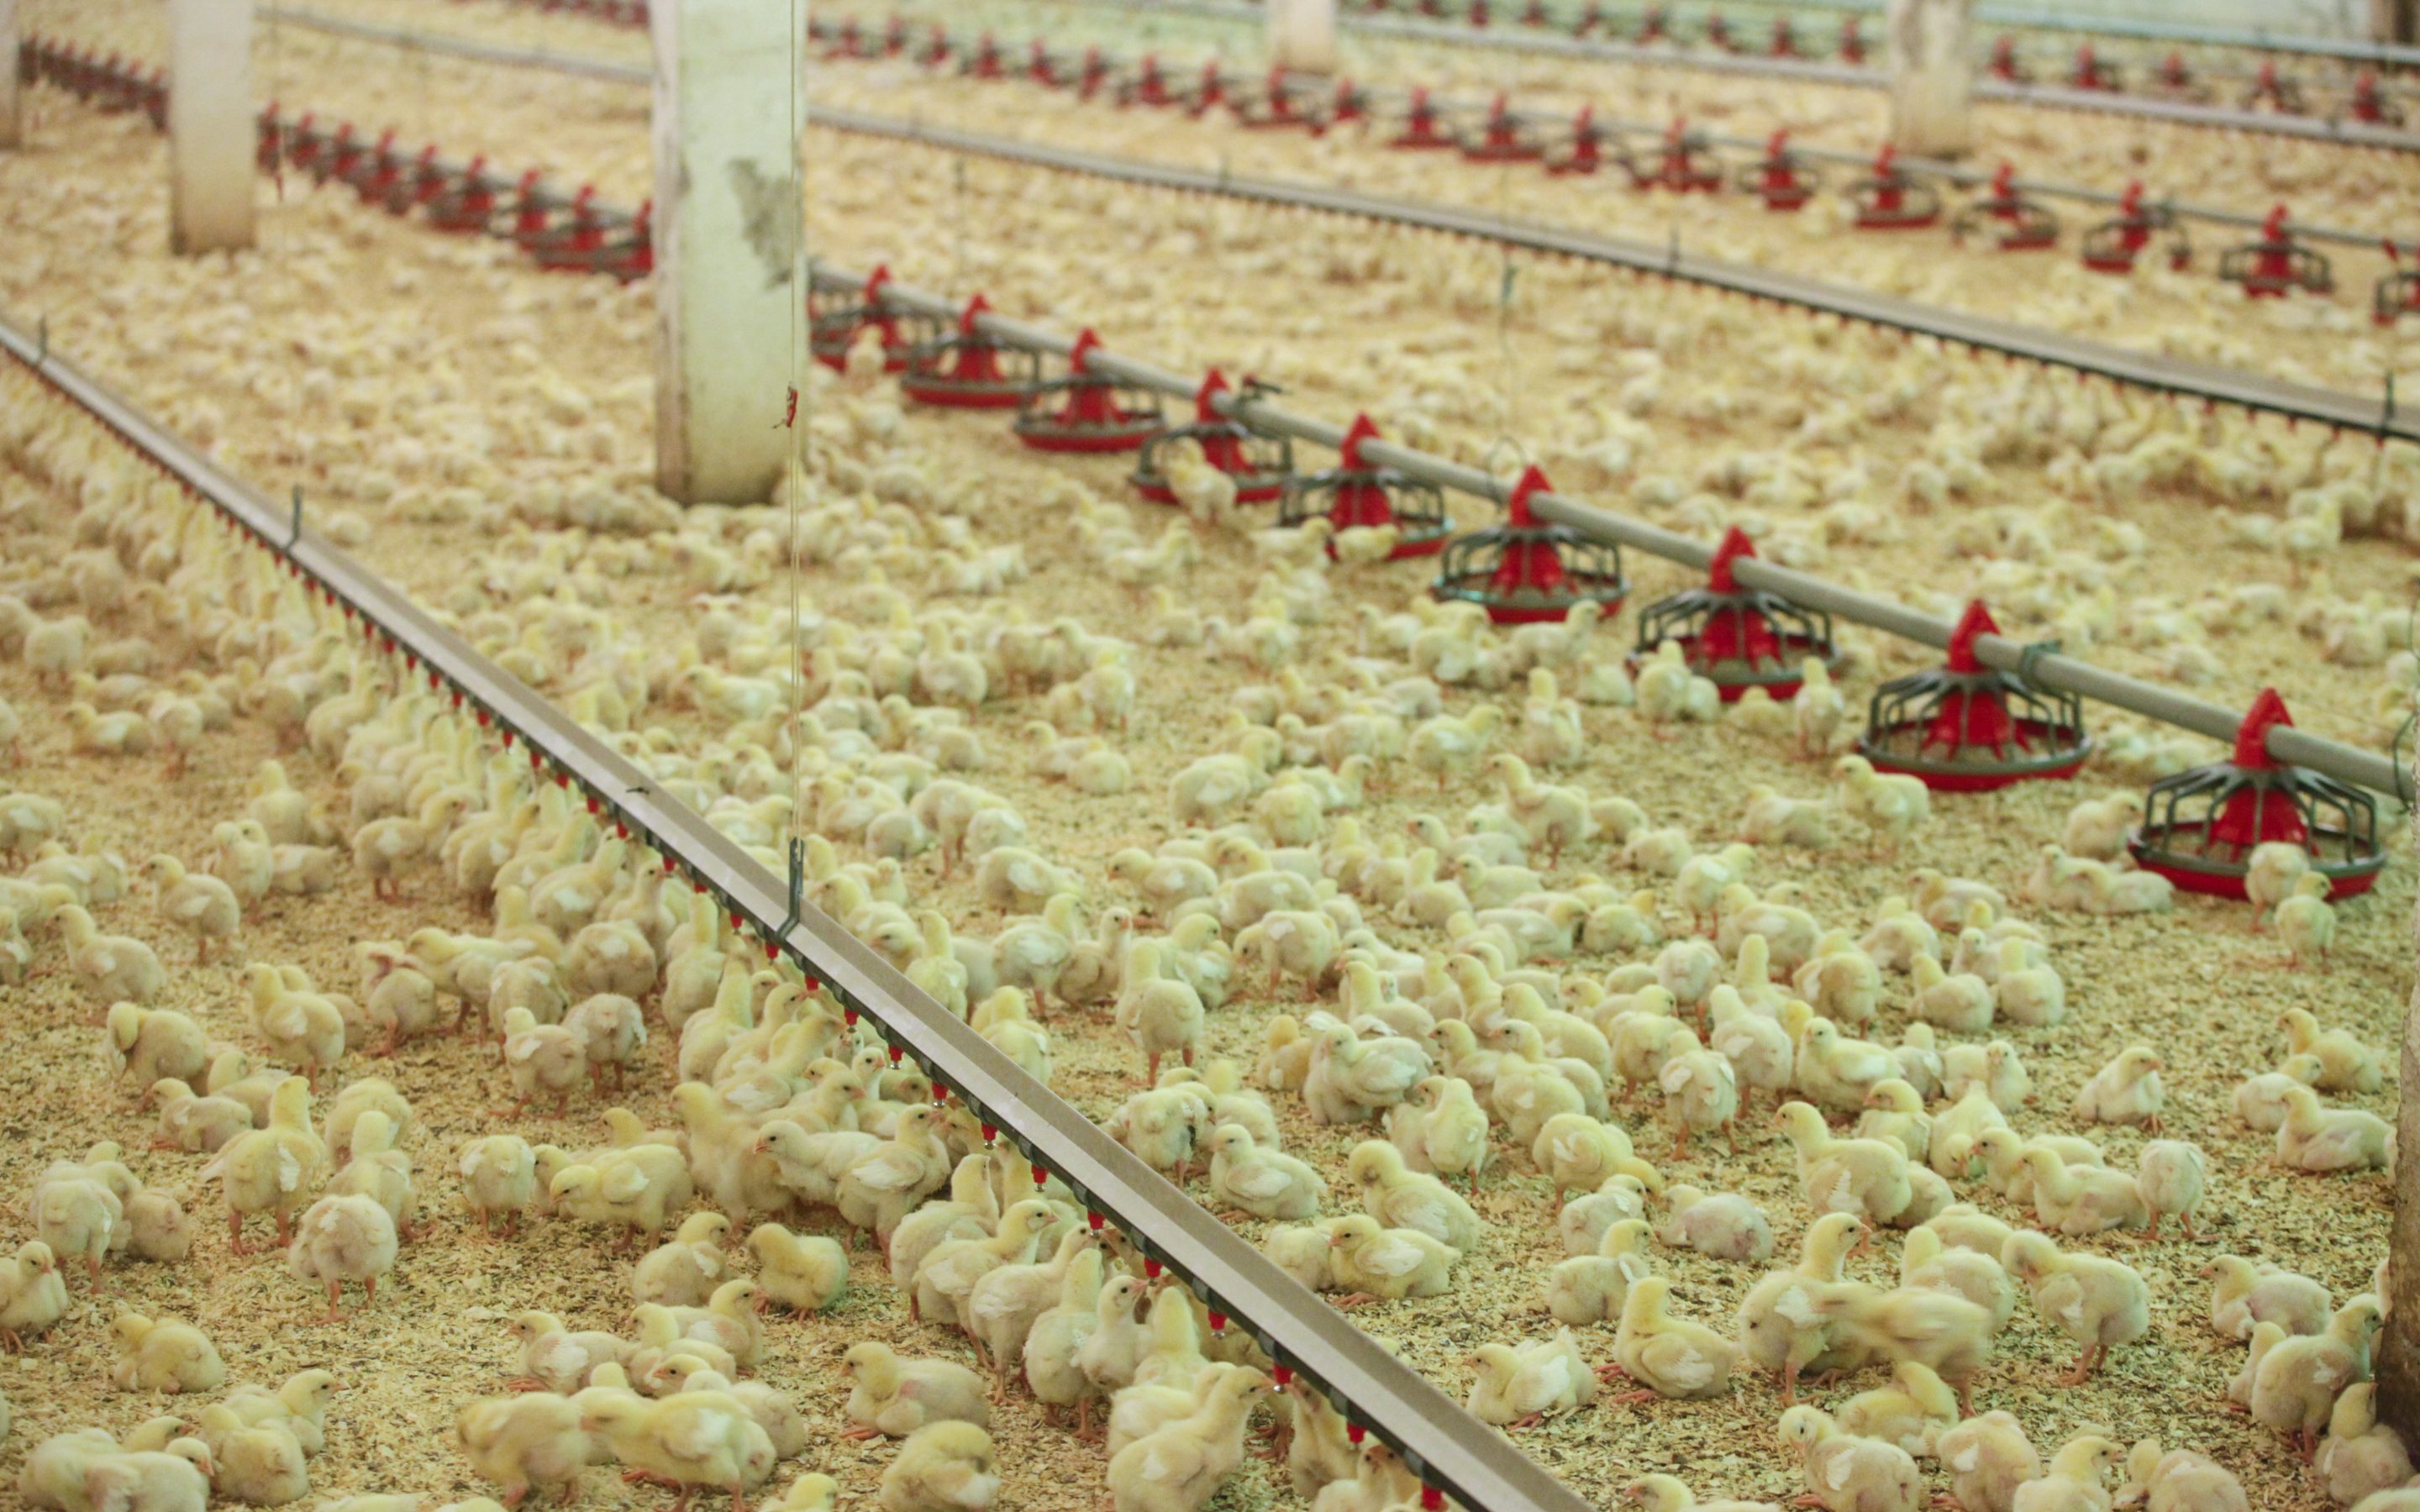 Investīcijas biodrošībā: 100 % “Putnu fabrikas Ķekava” broileru aug bez antibiotikām